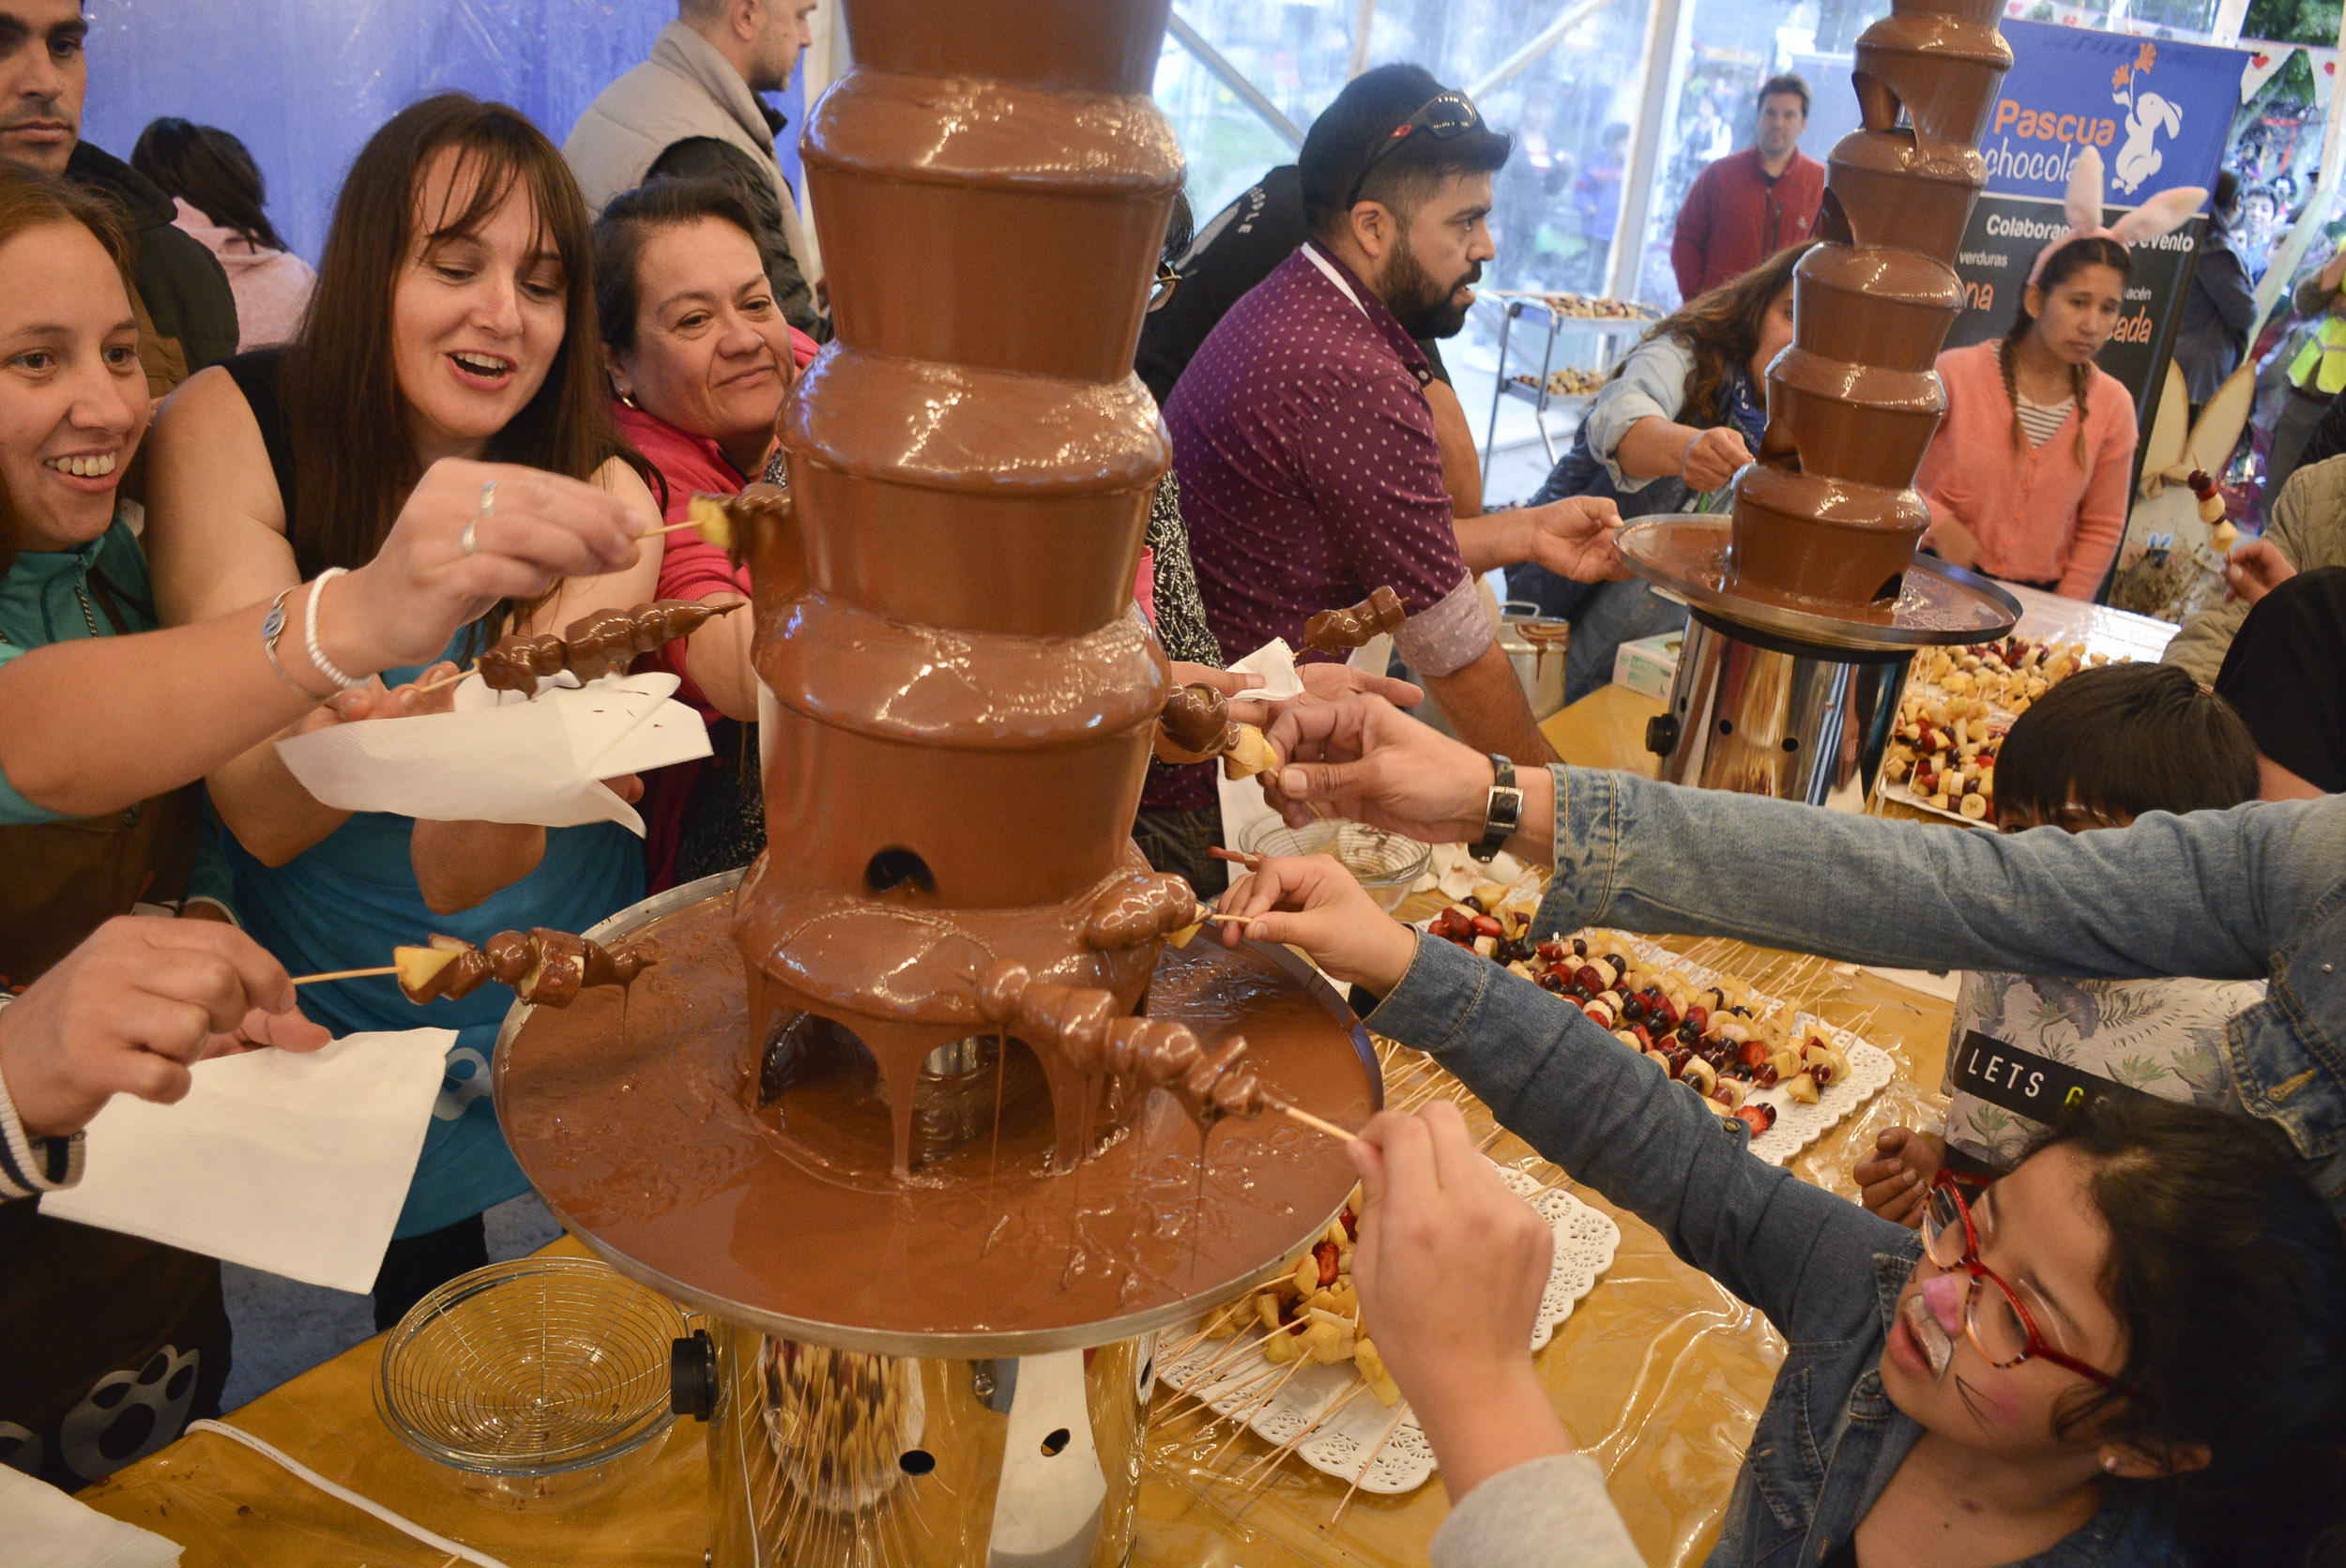 Las Pascuas también se celebraron con mucho chocolate en San Martín de los Andes. (Foto: Patricio Rodríguez)